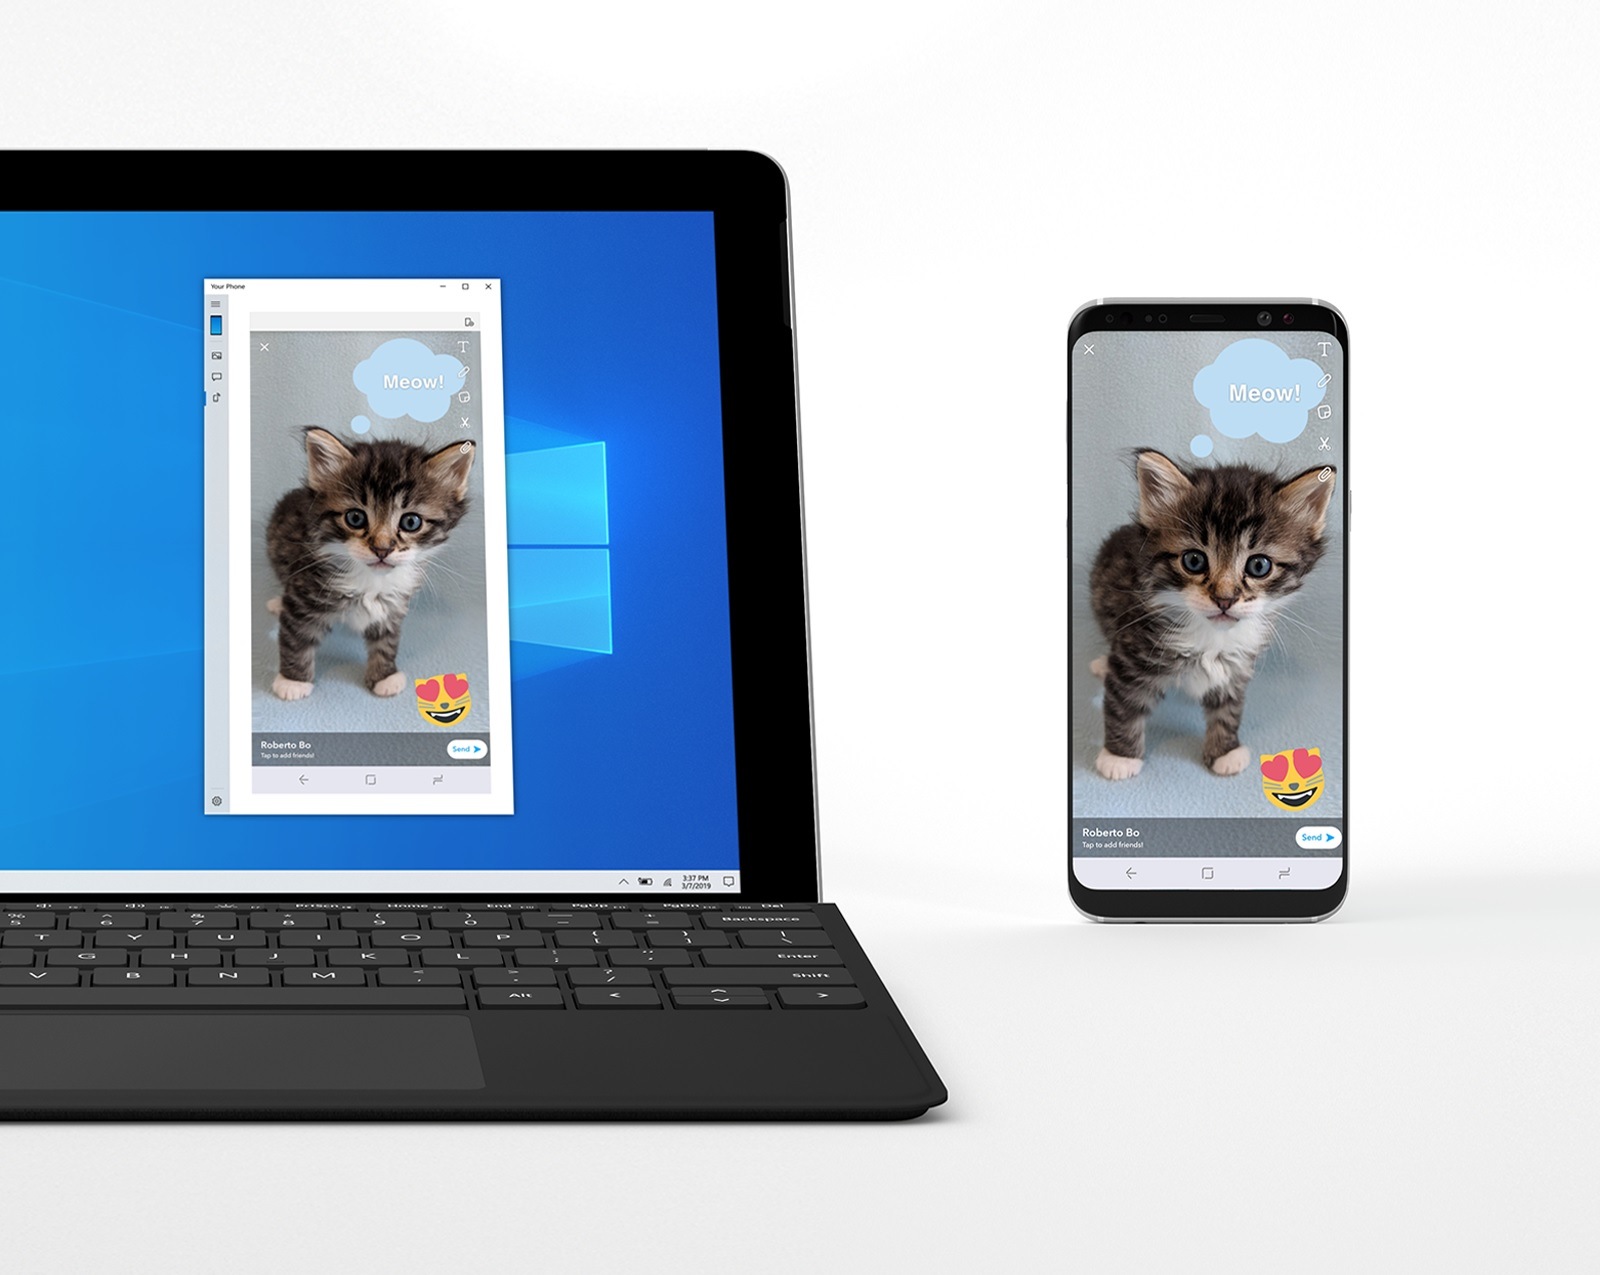 Your Phone: Microsoft erweitert Display spiegeln-Funktion auf weitere Geräte